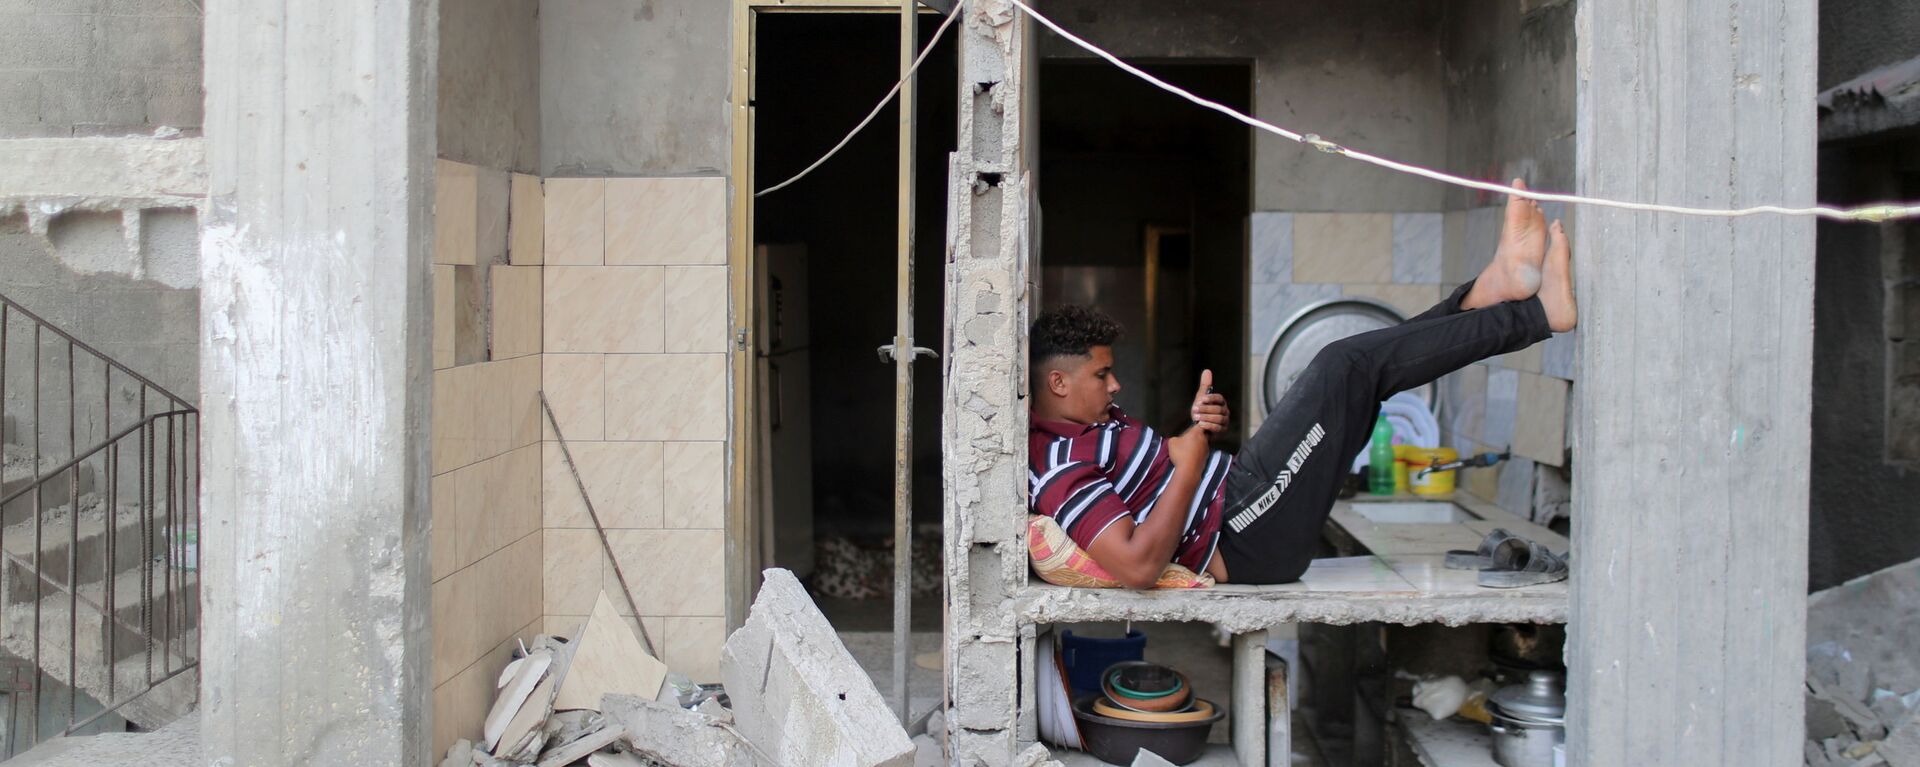 Палестинец в разрушенном здании в Газе - Sputnik Mundo, 1920, 16.06.2021